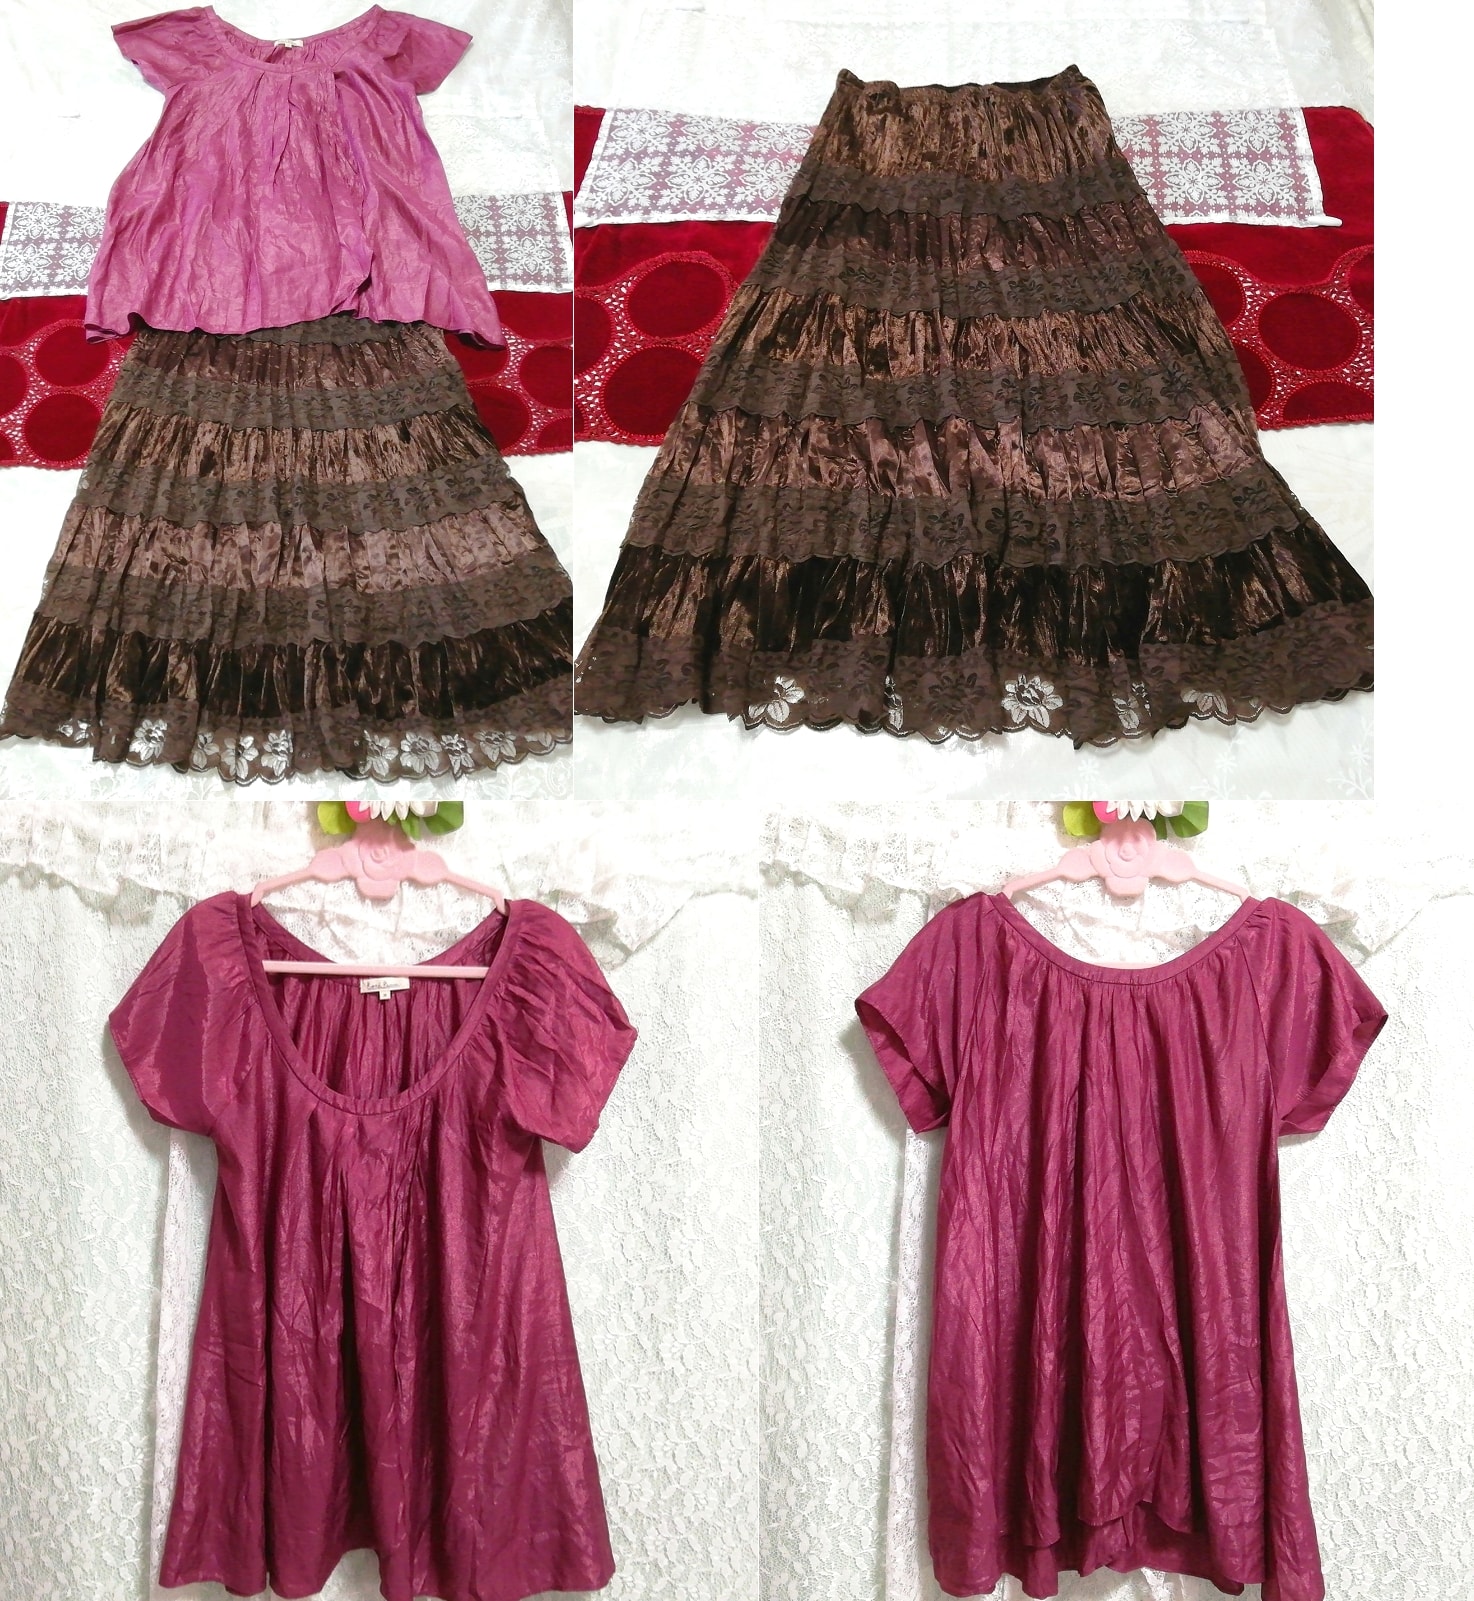 紫色短袖束腰睡衣棕色蕾丝喇叭长裙 2 件, 时尚, 女士时装, 睡衣